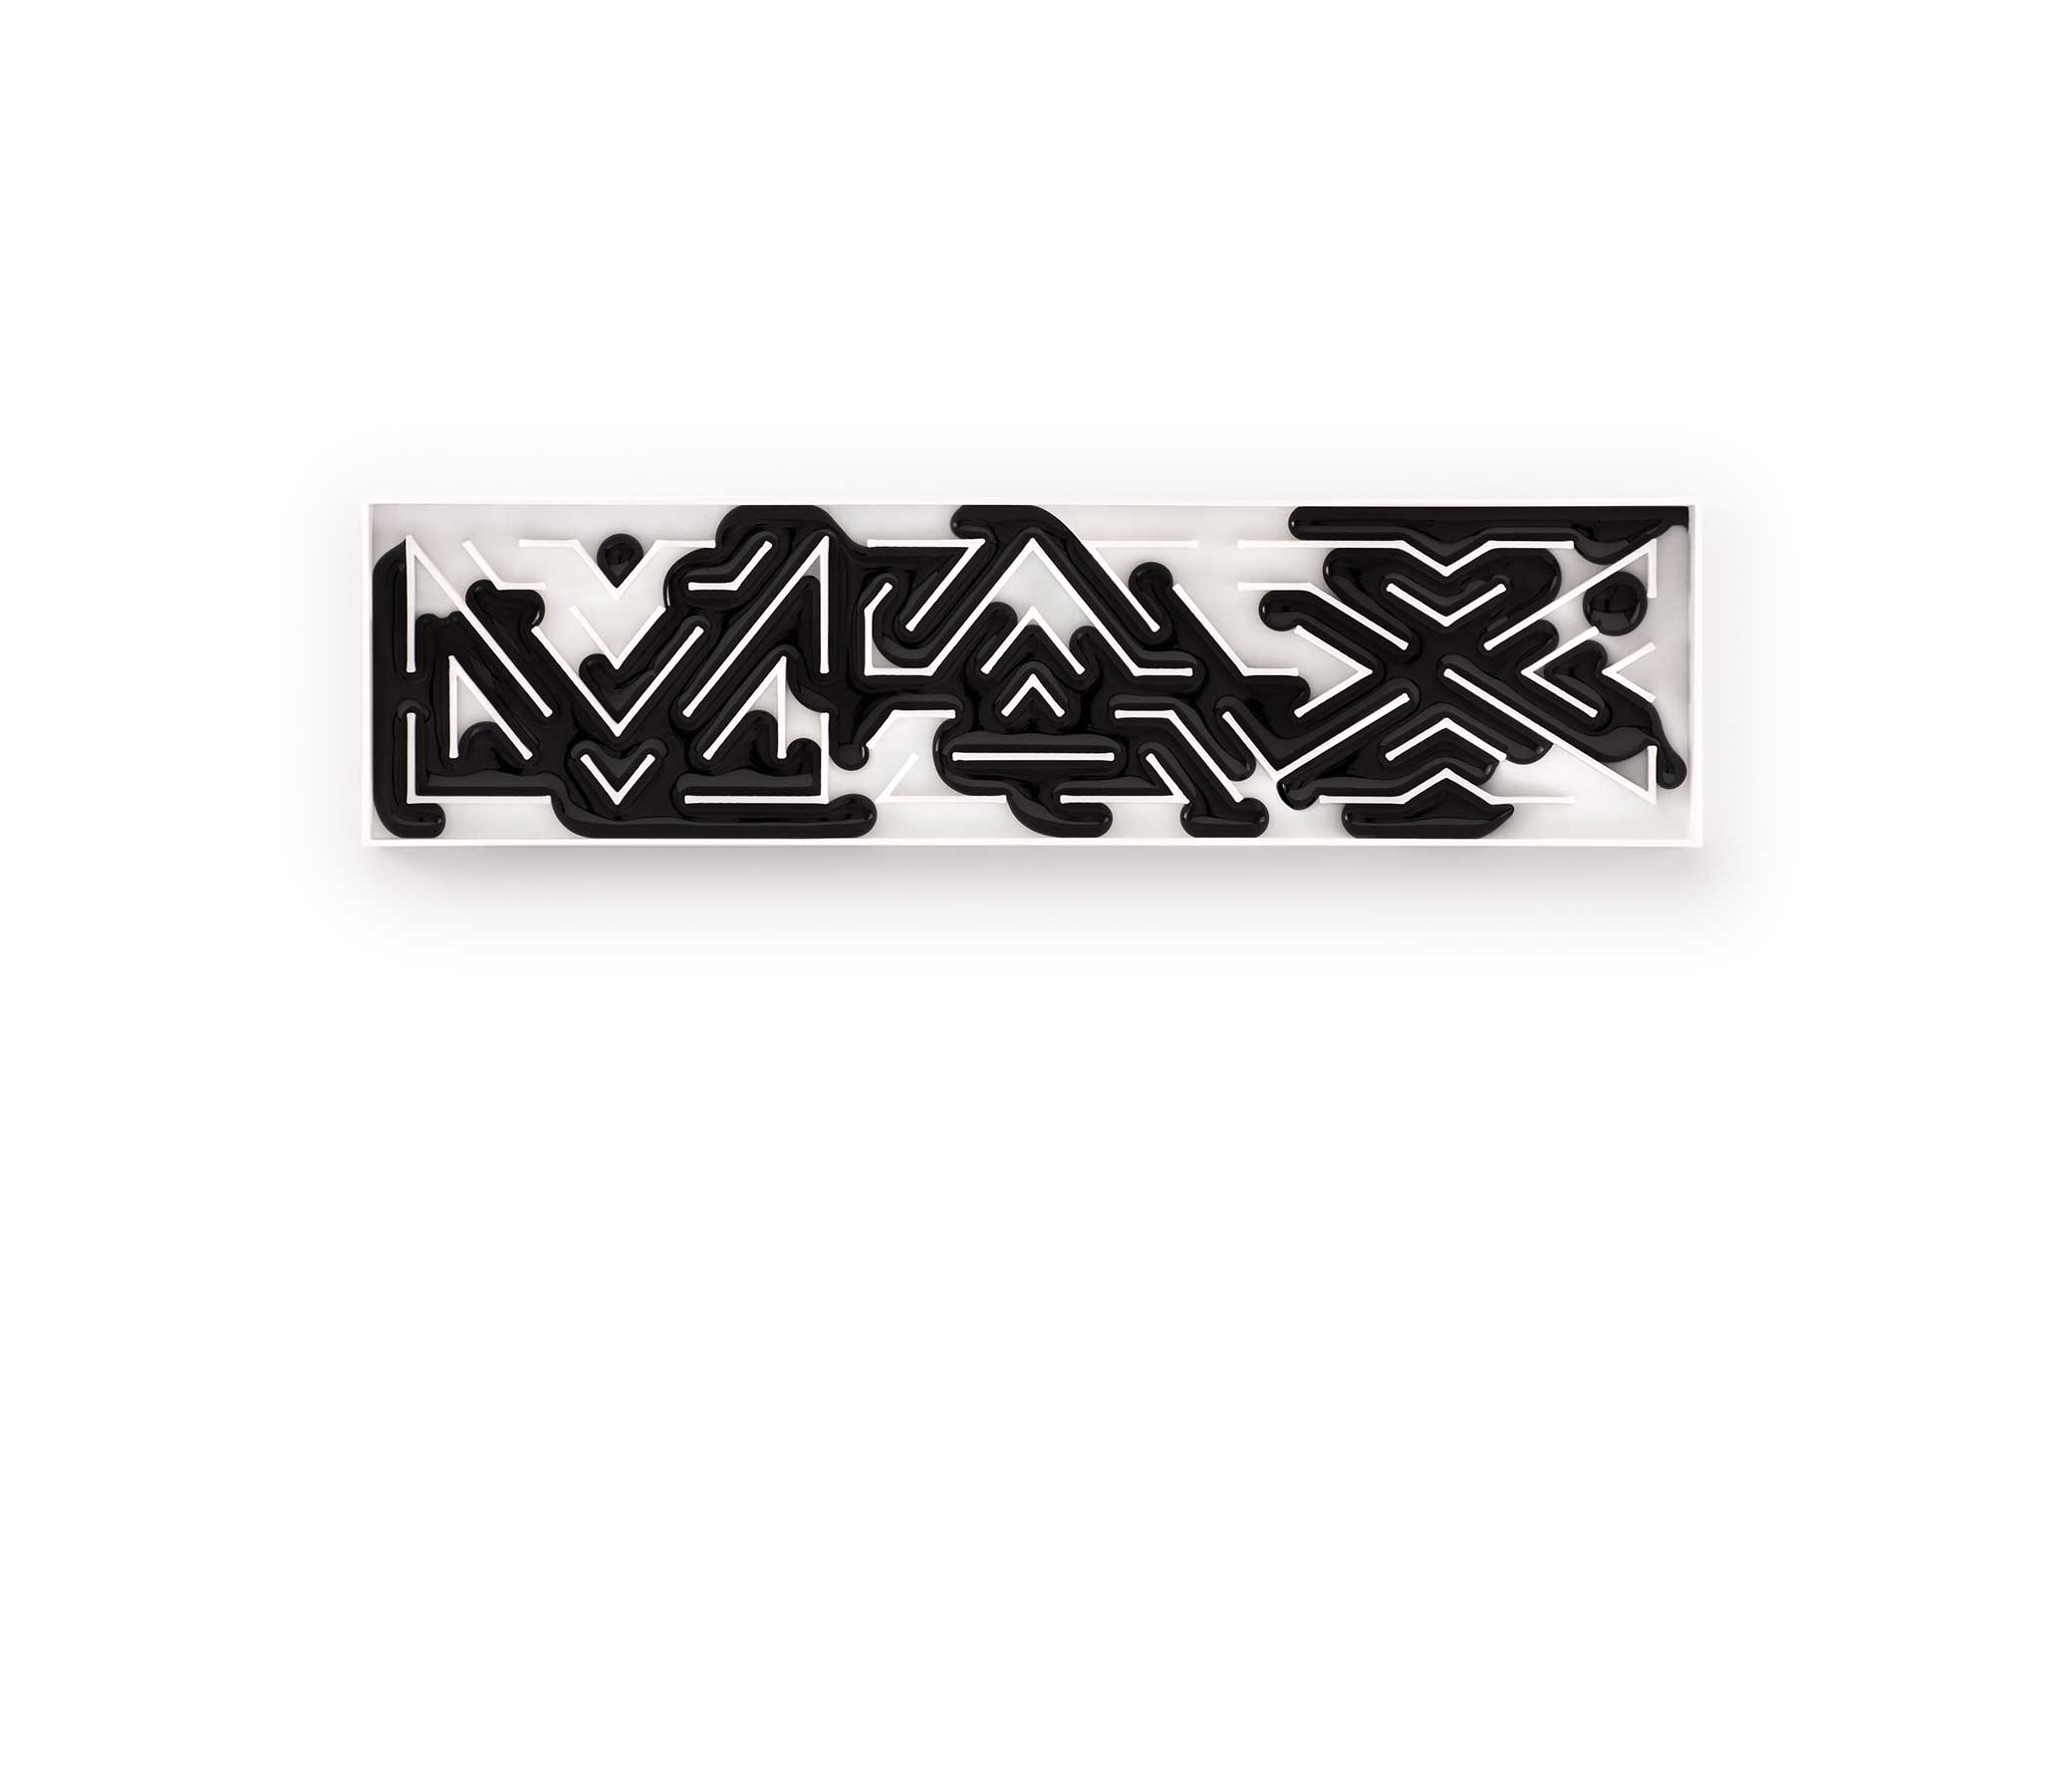 Max's Logo - Adobe MAX—The Creativity Conference.